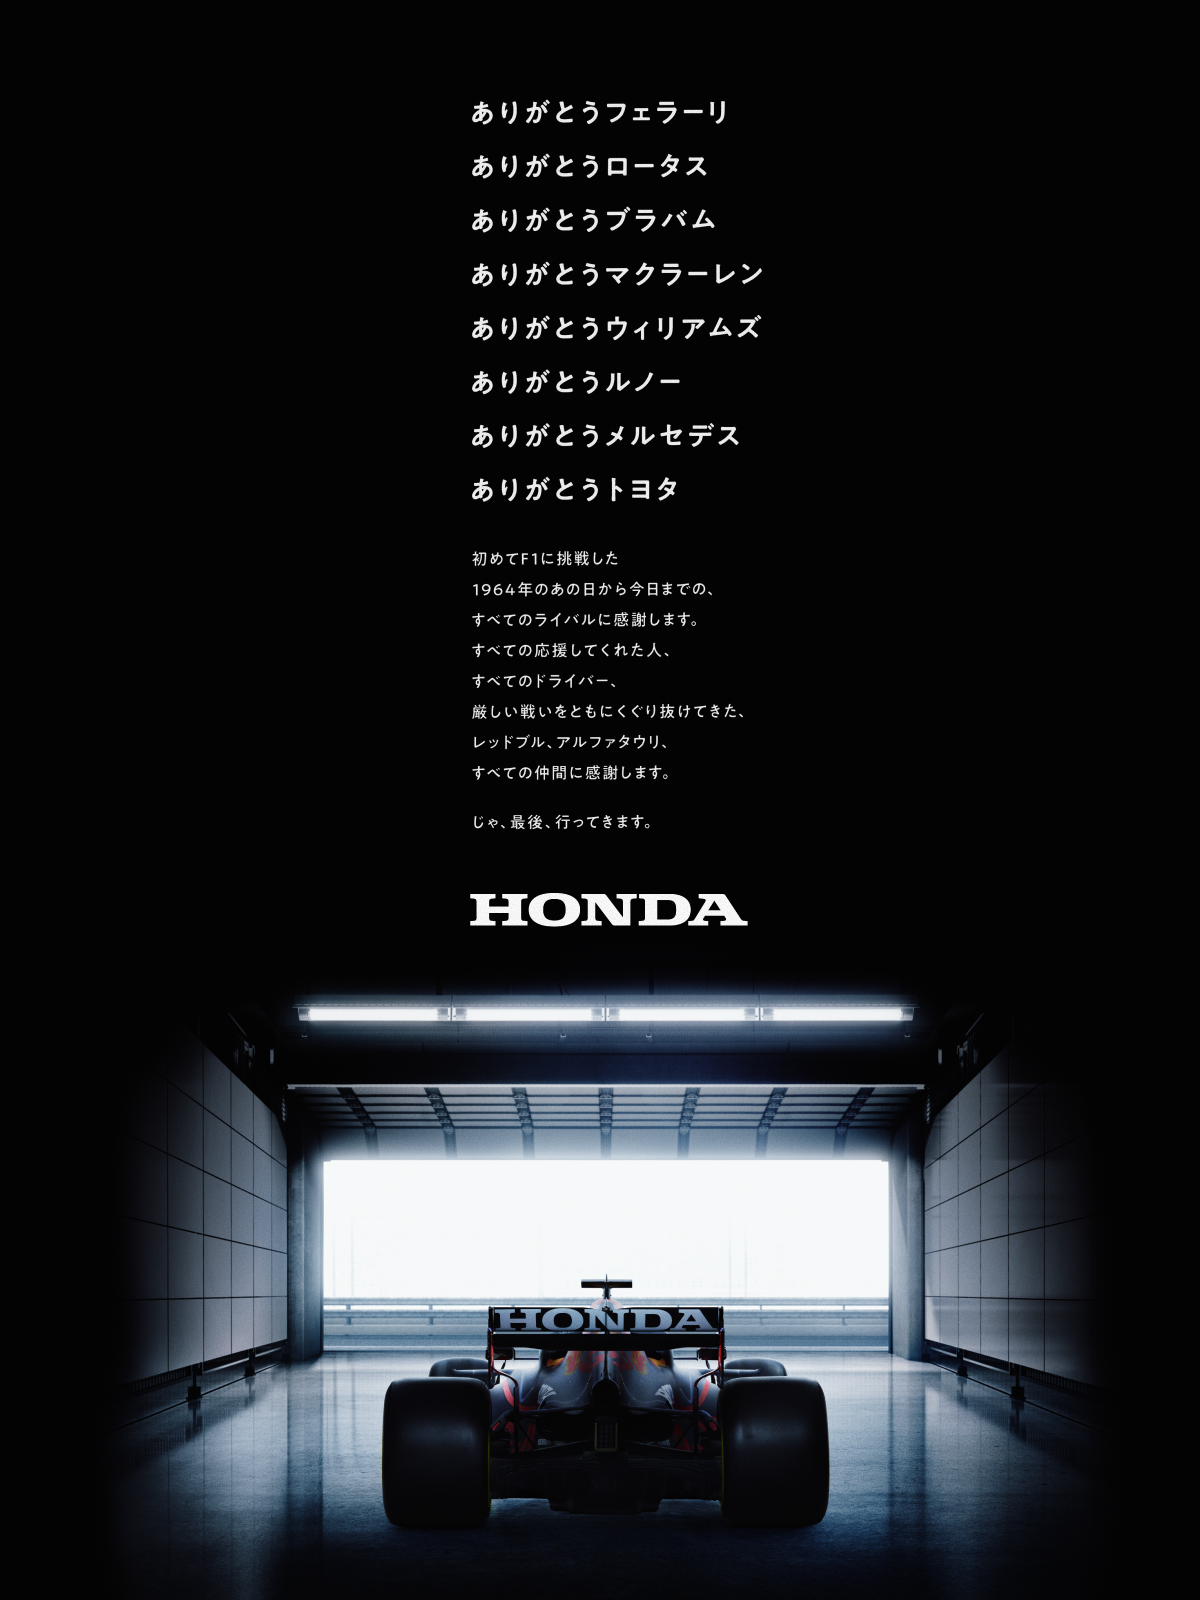 Honda 本田技研工業 株 じゃ 最後 行ってきます ありがとうf1 Thanksf1 T Co Dtuck5vllj Twitter